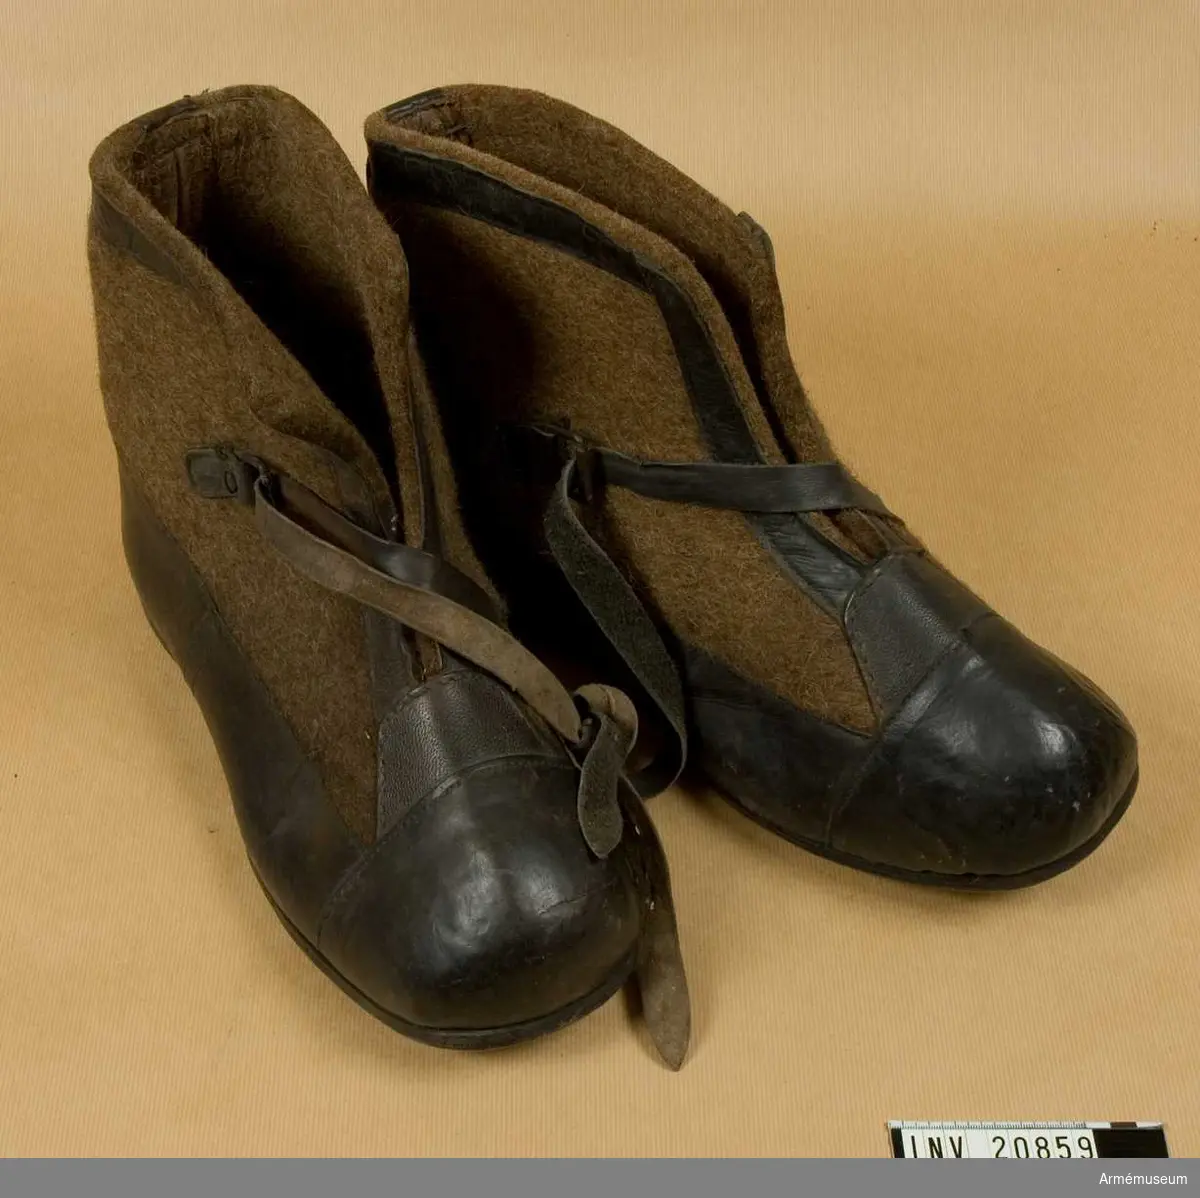 Grupp C.
Ur uniform för manskap, Första världskriget 1915-16, Tyskland.
Av mörkbrun filt, kantade med svart läder. På framsidan finns en rem med spännen som skorna spännes fast med. Sådana skor användes för vaktposten under vintern. De sattes ovanpå stövlarna.